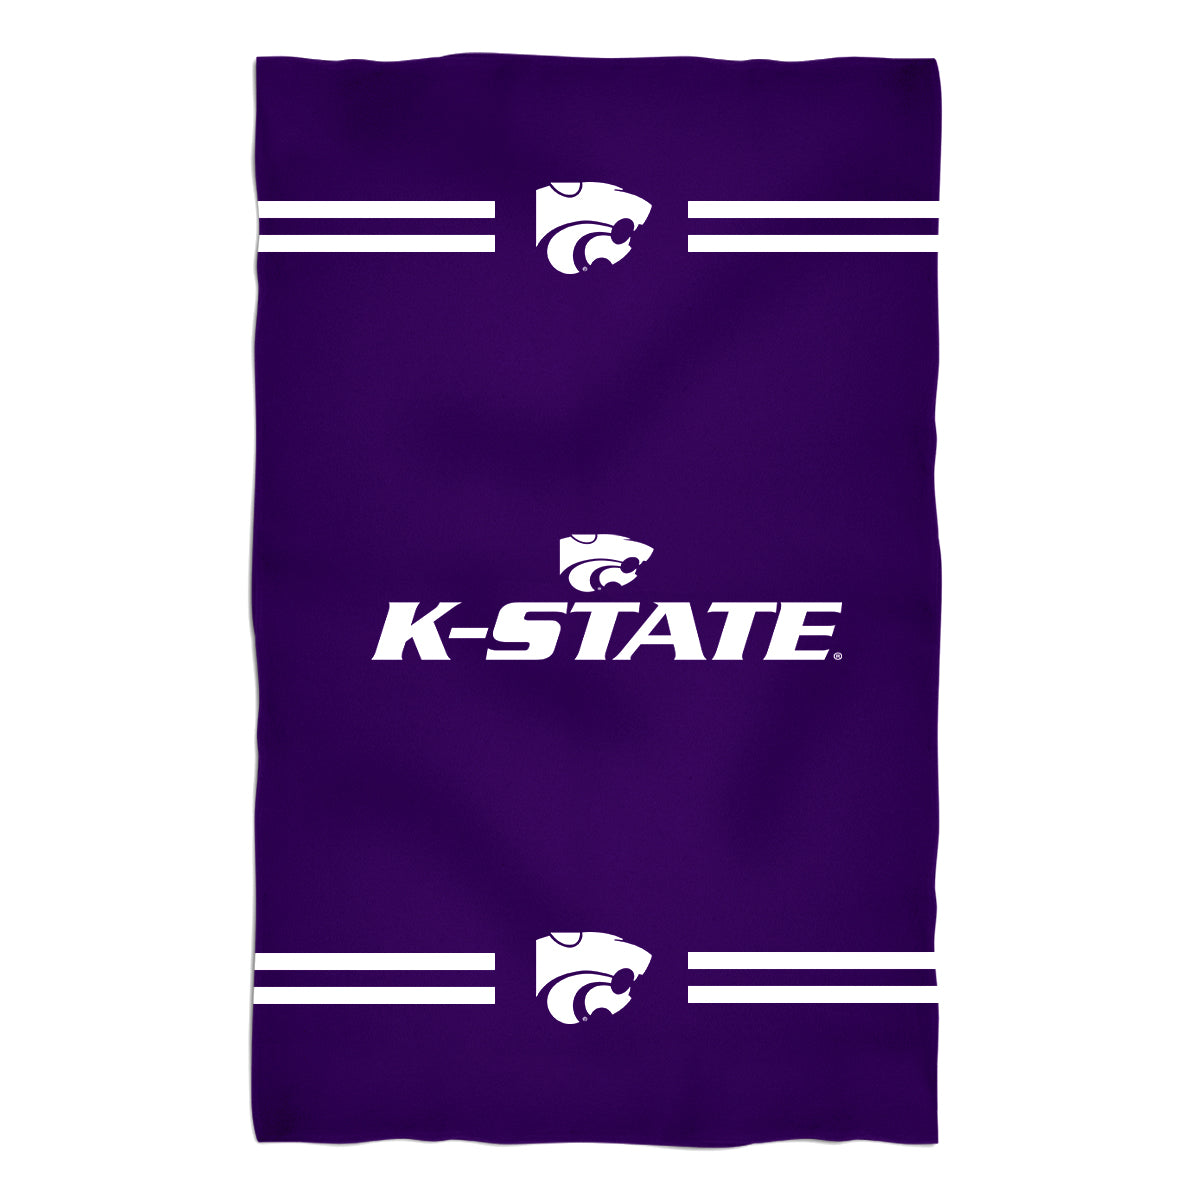 Kansas State Wildcats KSU K-State Black Purple Bath Towel by Vive La Fete